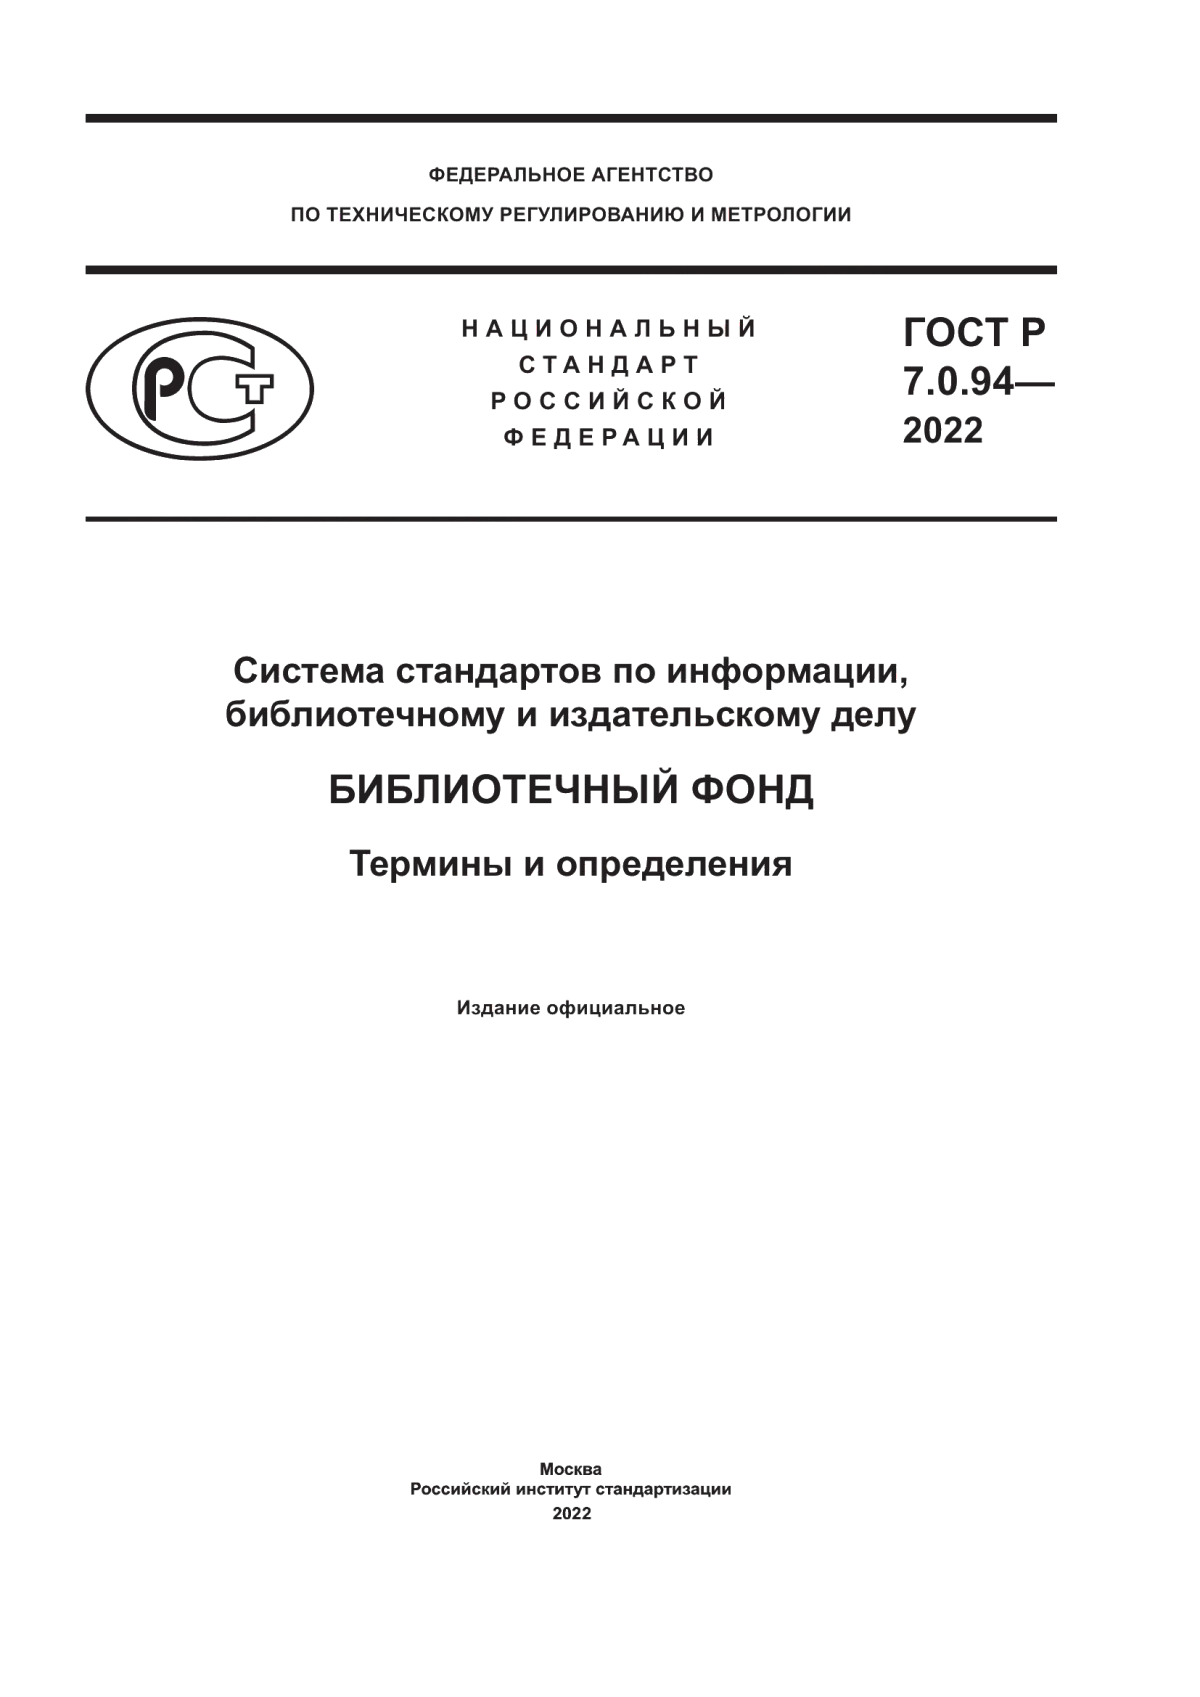 ГОСТ Р 7.0.94-2022 Система стандартов по информации, библиотечному и издательскому делу. Библиотечный фонд. Термины и определения